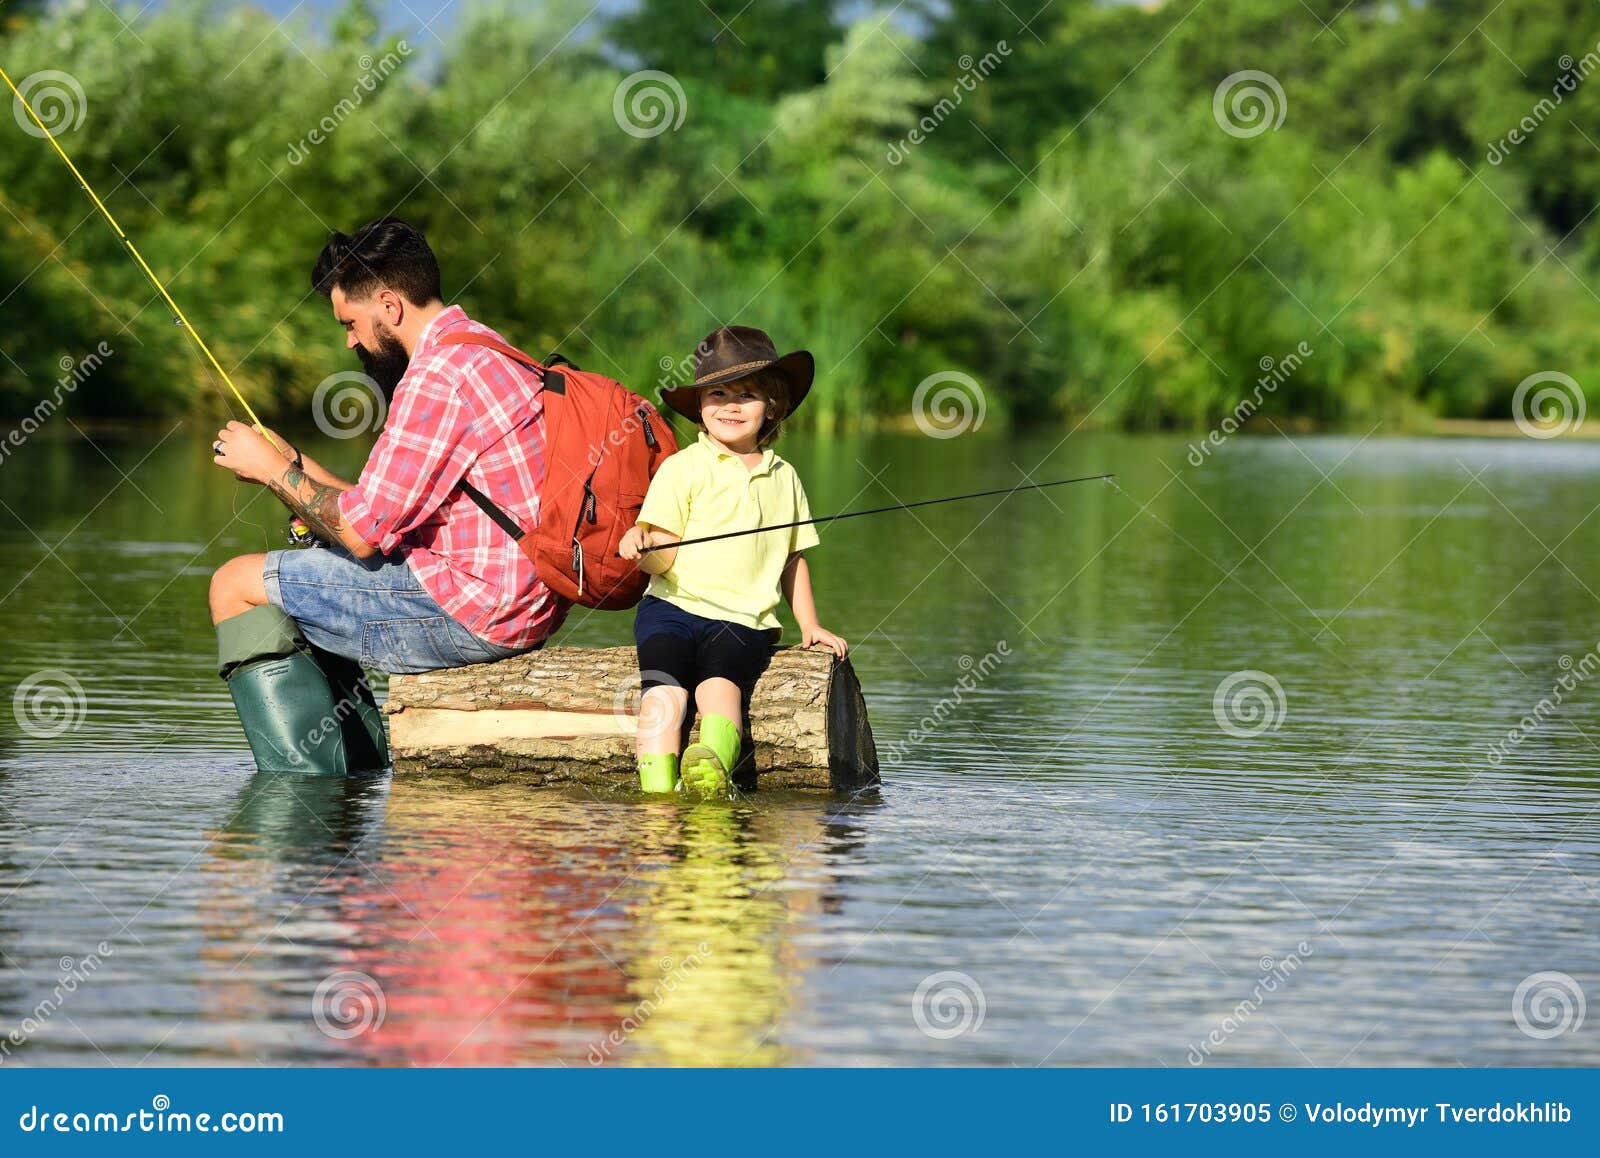 Рыбалка на школьном озере - советы и рекомендации